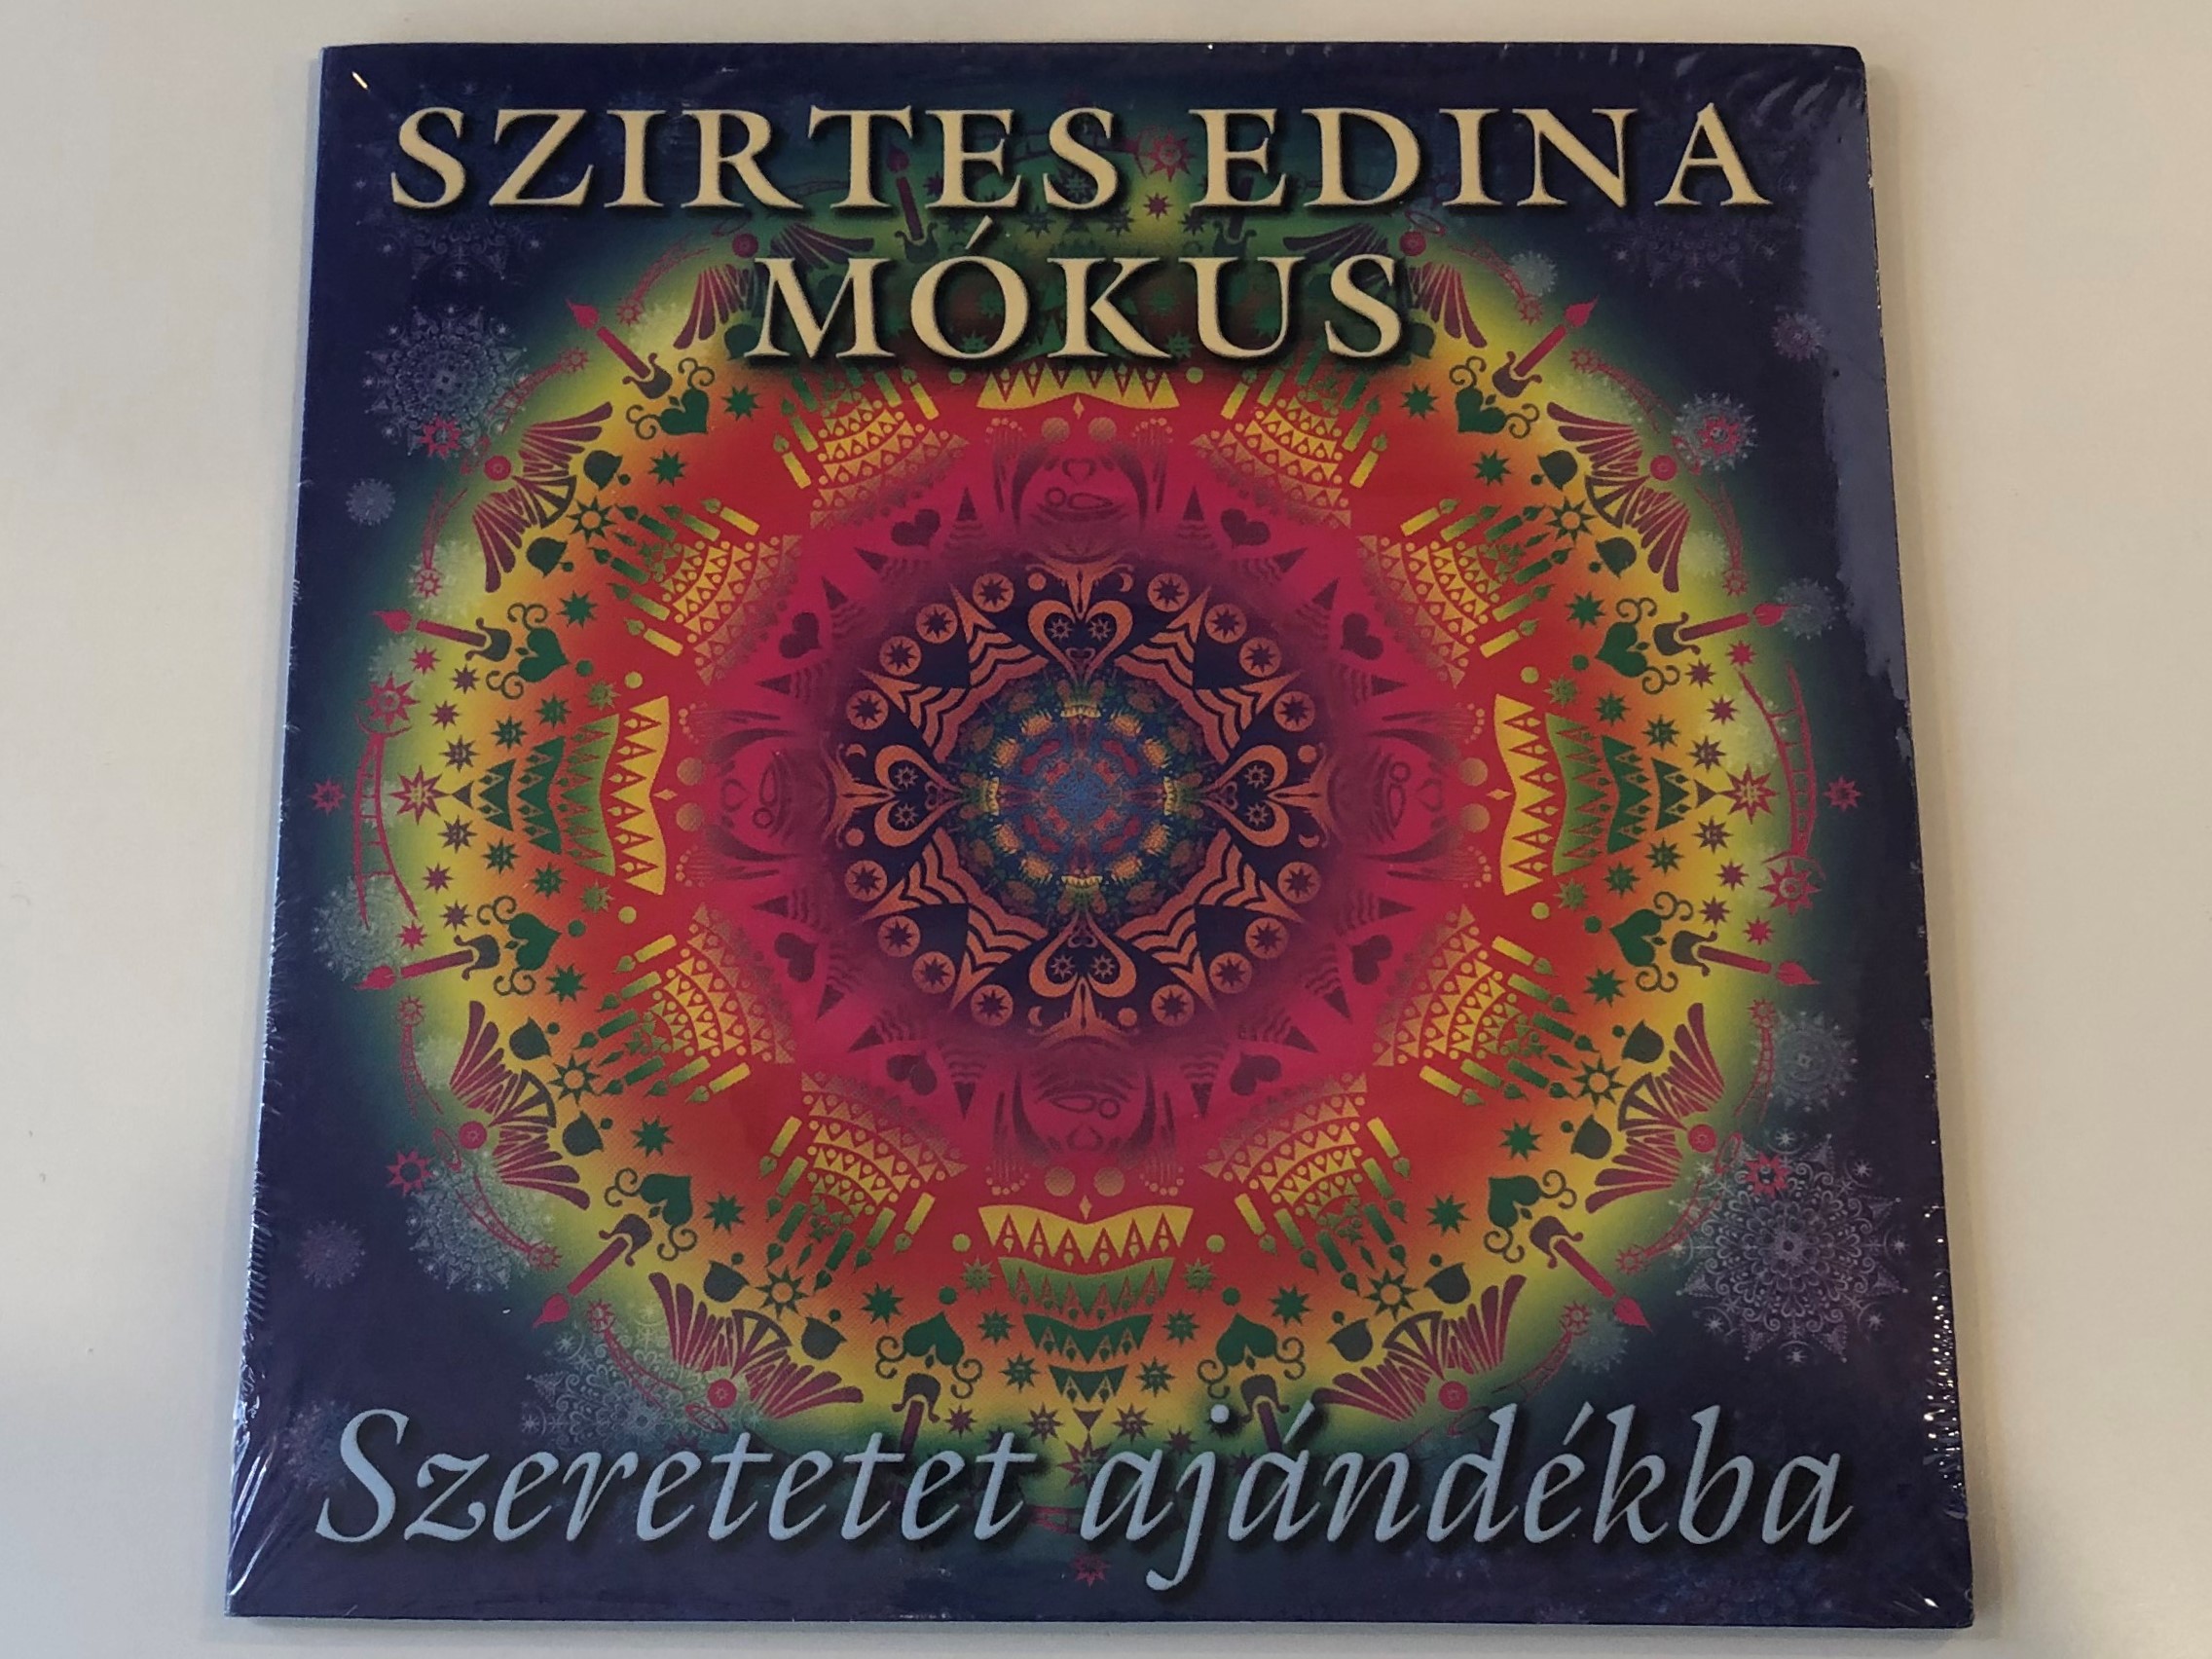 szirtes-edina-mokus-szeretetet-ajandekba-gryllus-audio-cd-2014-gcd-149-1-.jpg